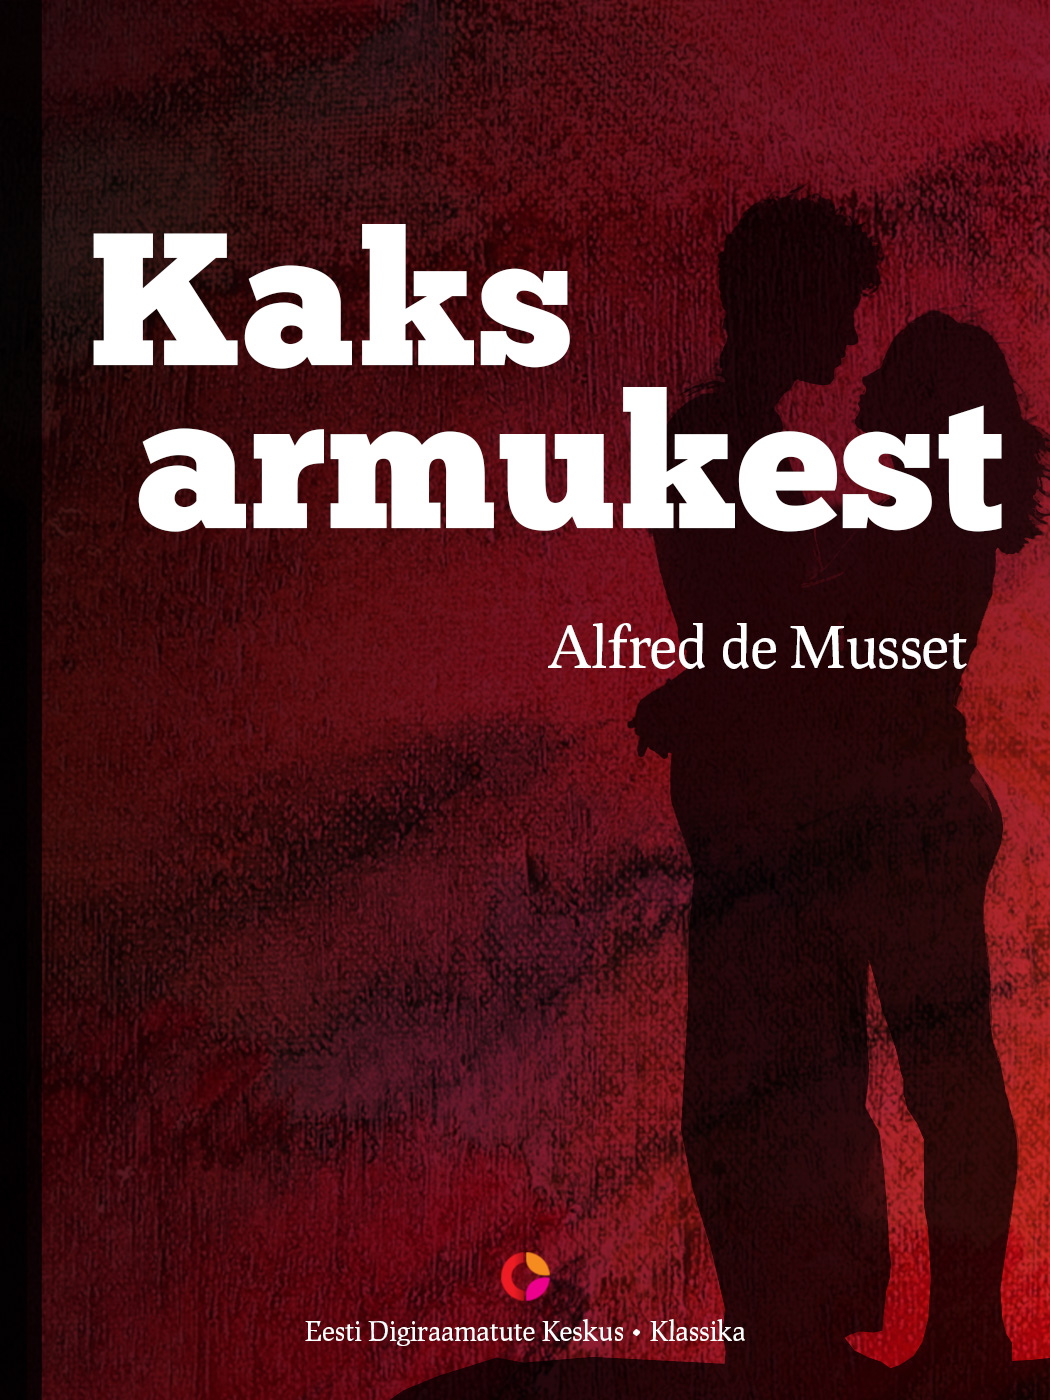 Книга Kaks armukest из серии , созданная Alfred de Musset, может относится к жанру Литература 19 века, Классическая проза, Зарубежная классика. Стоимость электронной книги Kaks armukest с идентификатором 21184556 составляет 298.37 руб.